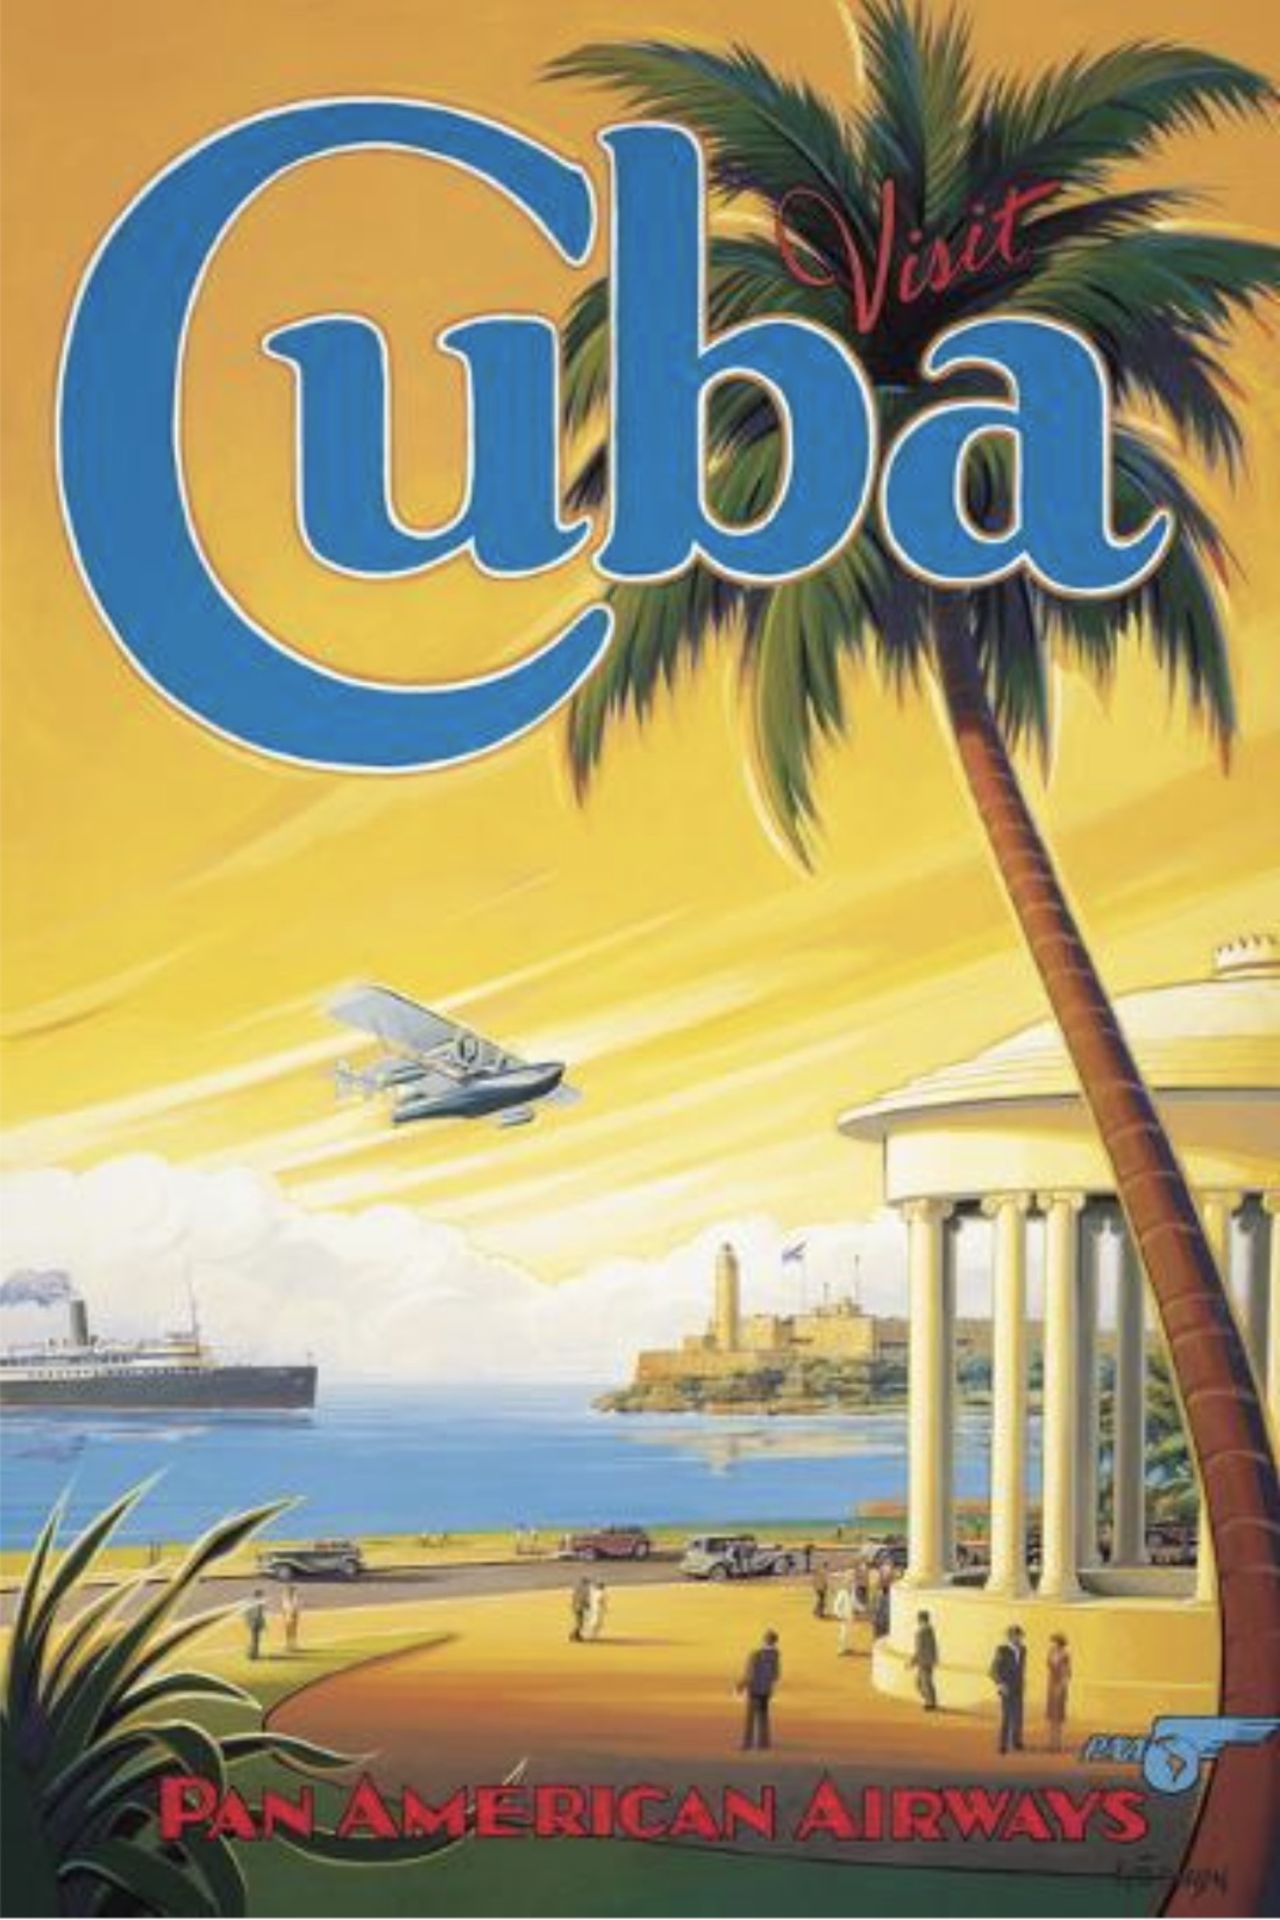 "Visit Cuba, Pan American Airways" Poster